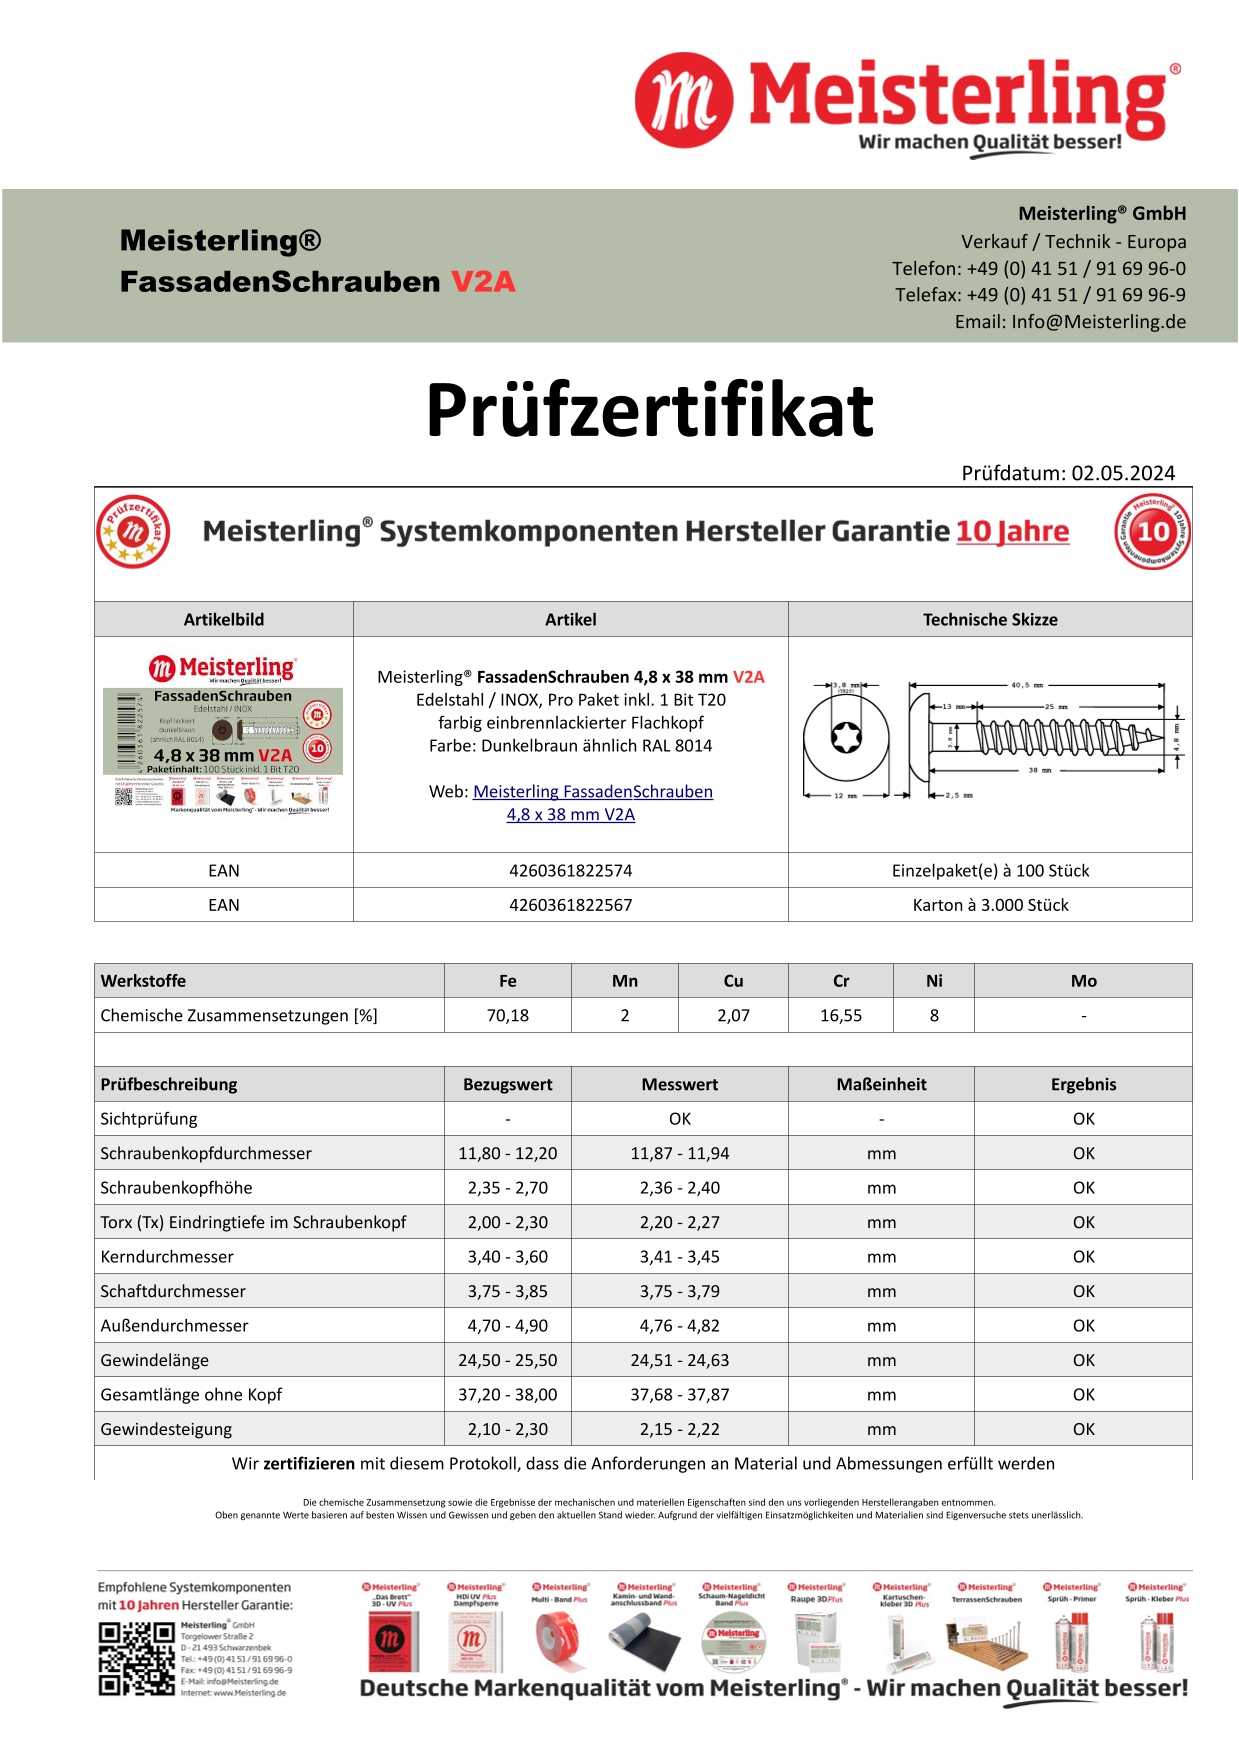 Prüfzertifikat Meisterling® FassadenSchrauben 4,8 x 38 mm V2a dunkelbraun